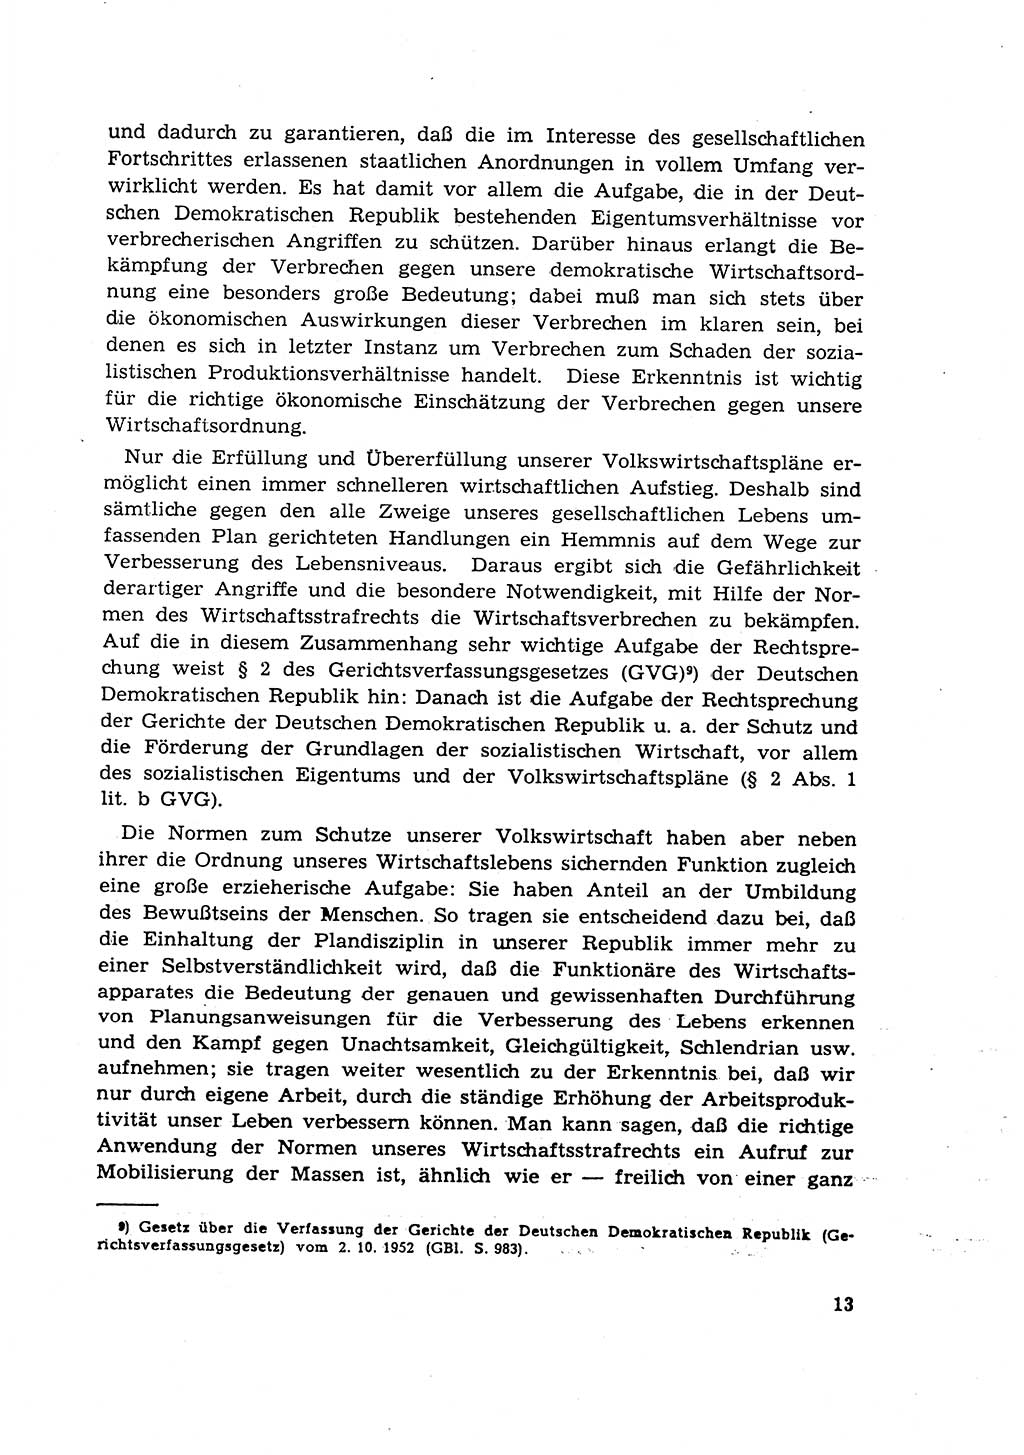 Materialien zum Strafrecht, Besonderer Teil [Deutsche Demokratische Republik (DDR)] 1955, Seite 13 (Mat. Strafr. BT DDR 1955, S. 13)